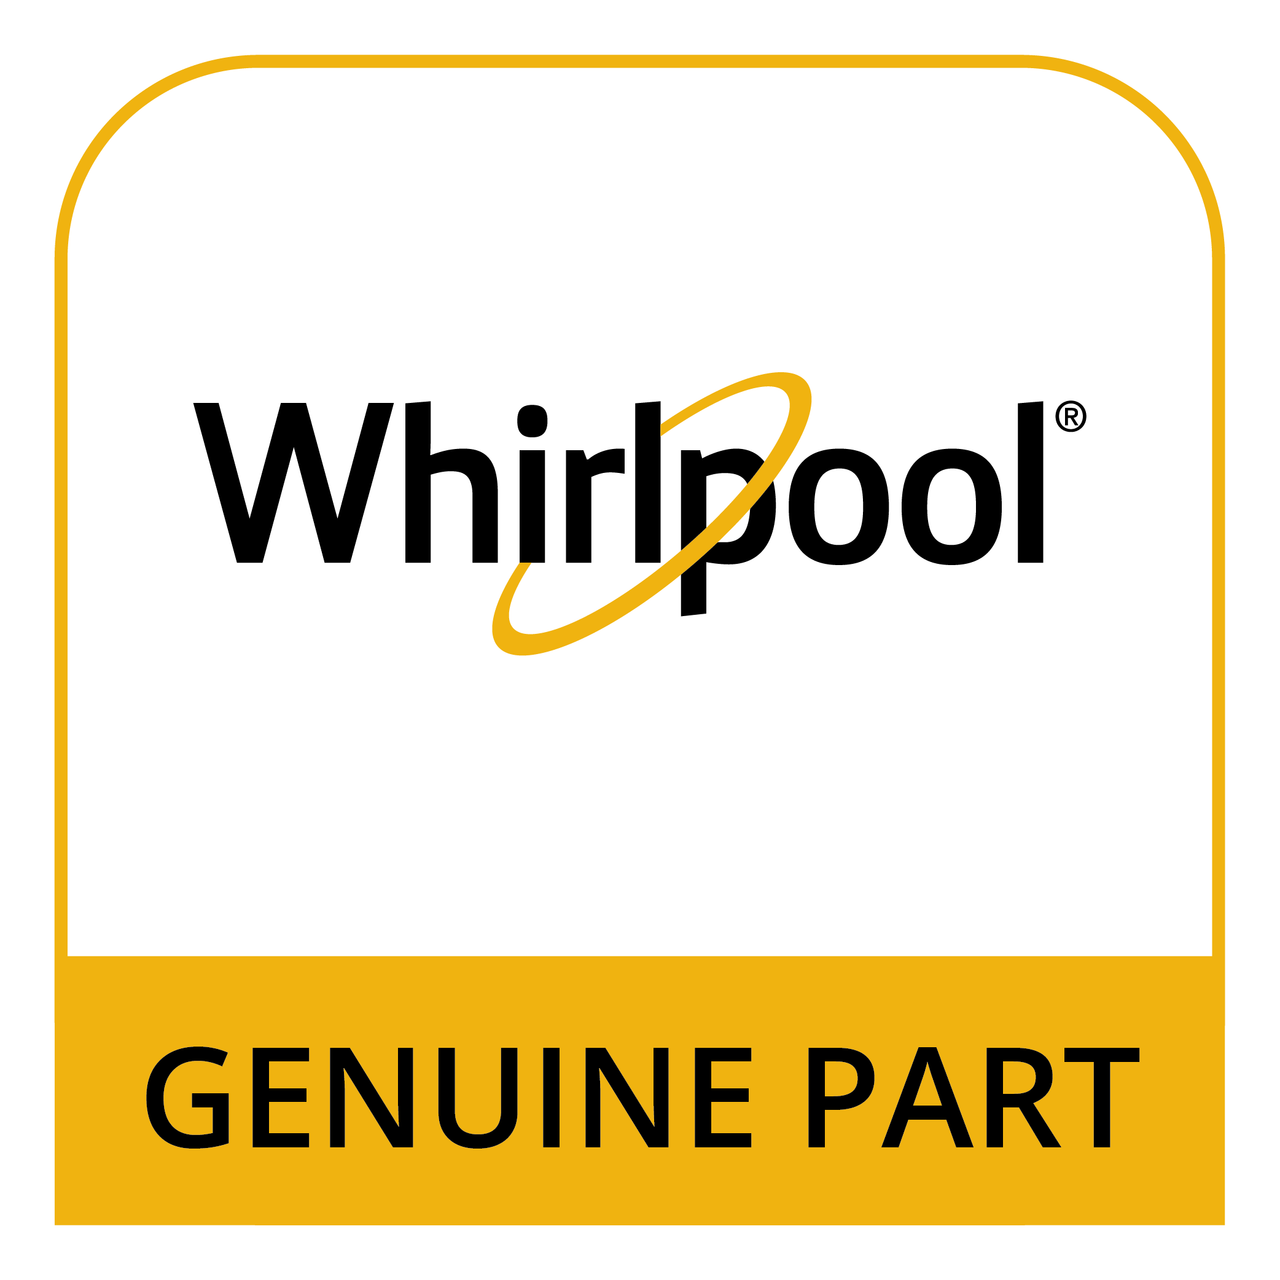 Whirlpool 814323 - Gas Range Burner Grate Pads - Genuine Part